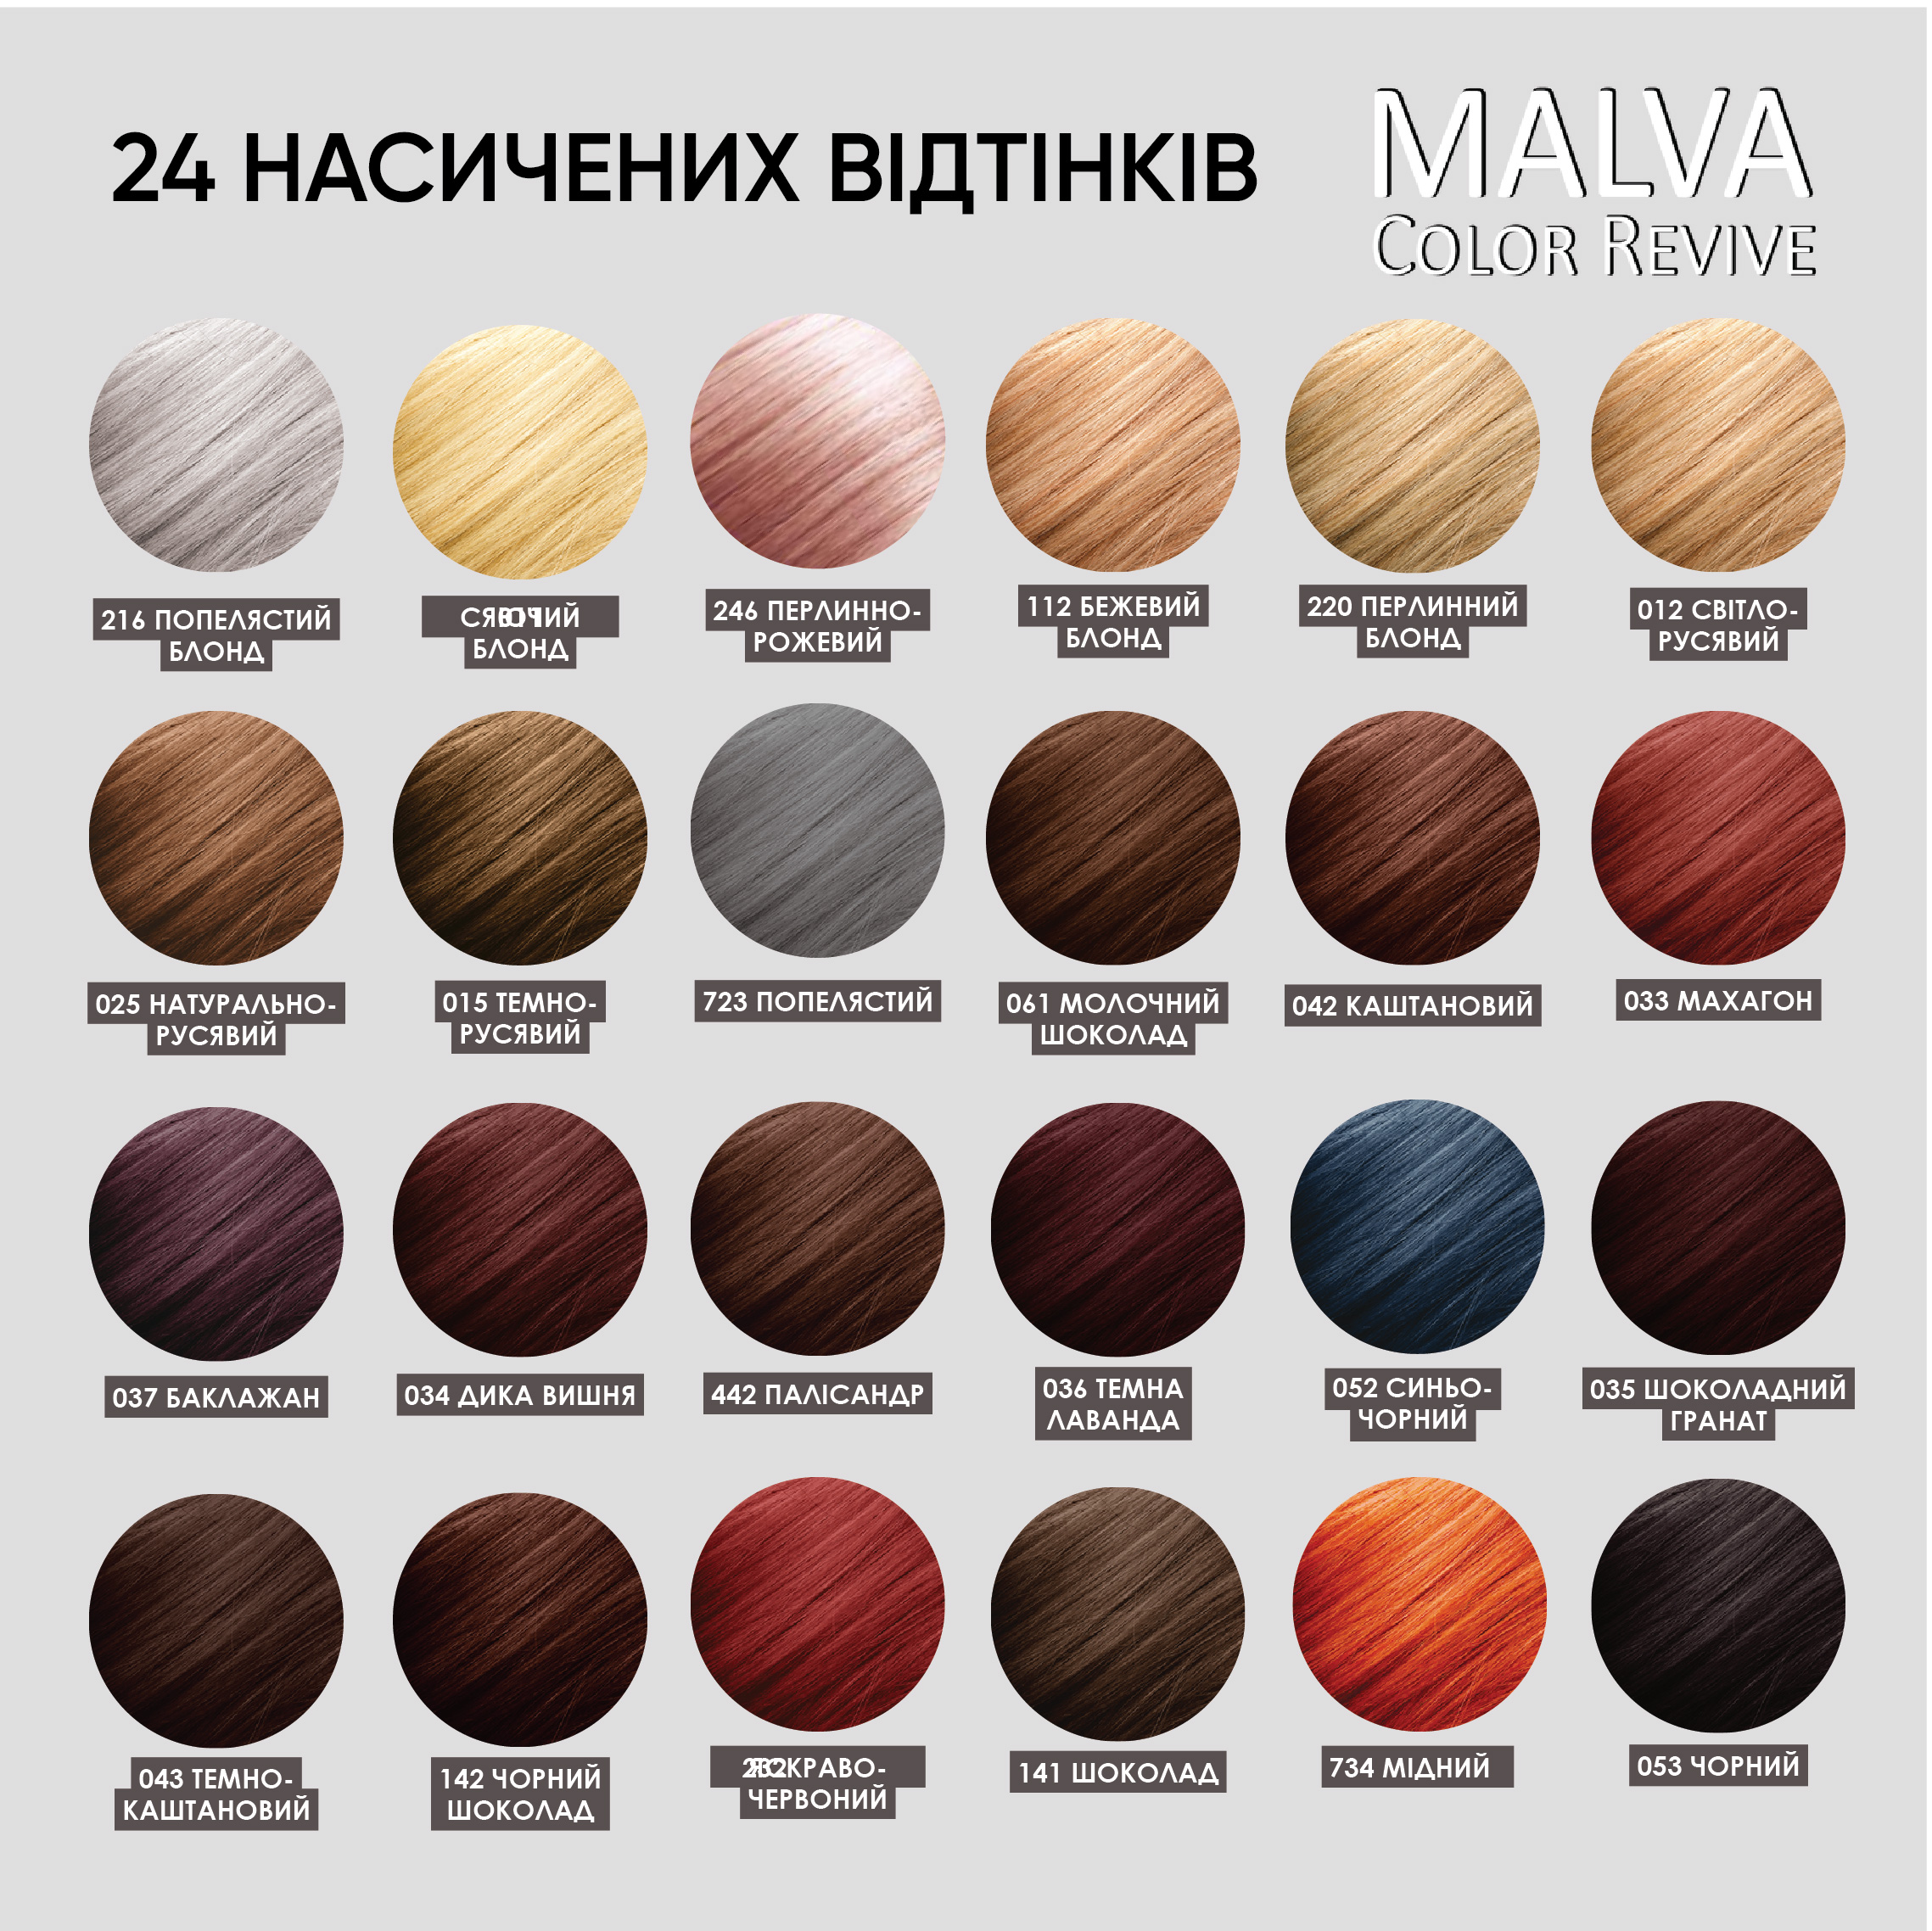 Устойчивая крем-краска для волос Malva Color Revive оттенок 012 Светло-русый - фото 6